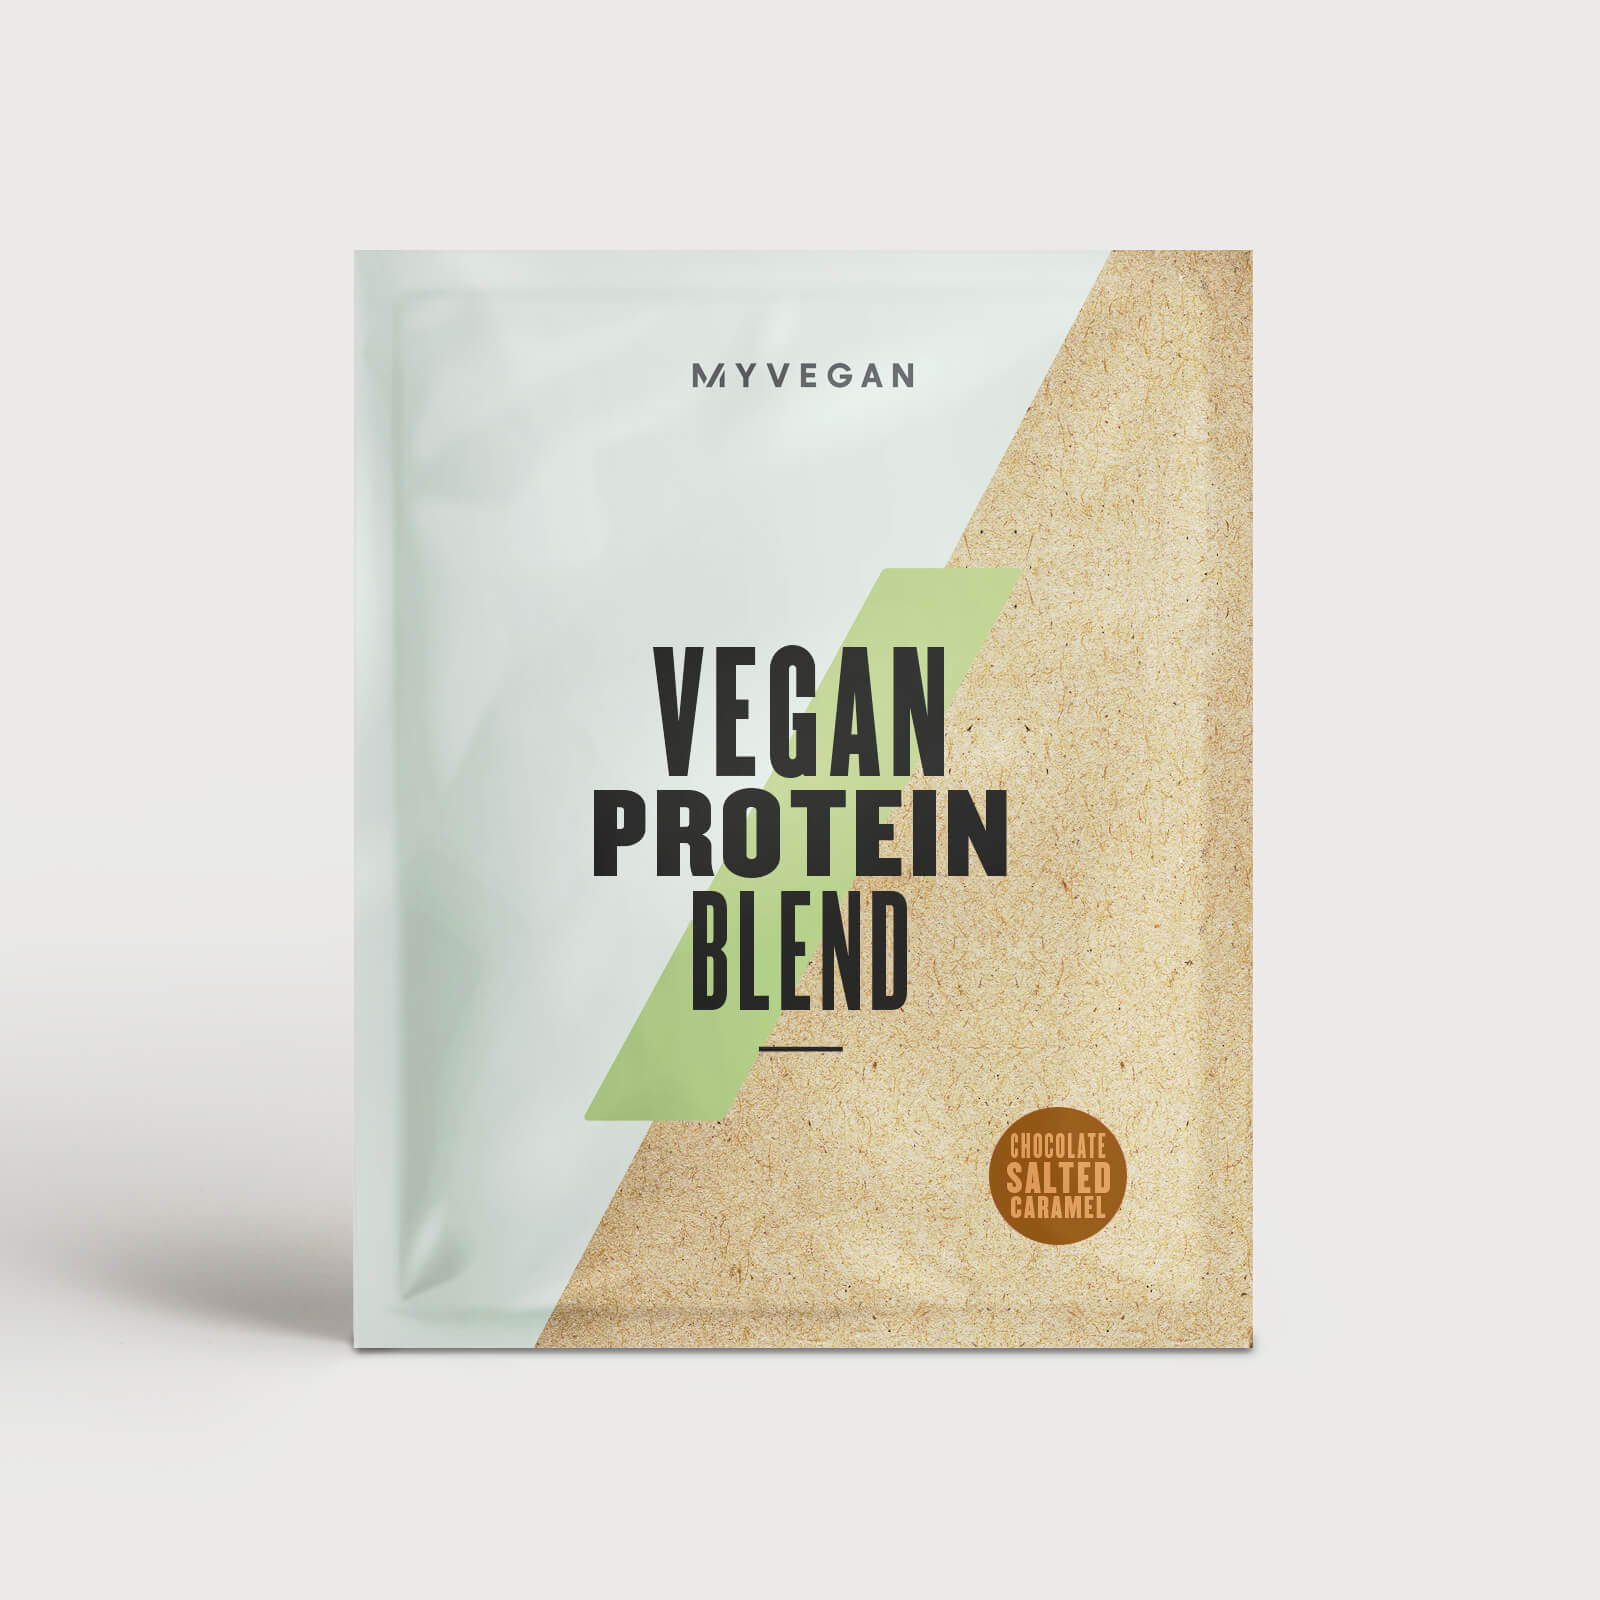 Myvegan Vegan Protein Blend (Sample) - 30g - Chocolate Salted Caramel